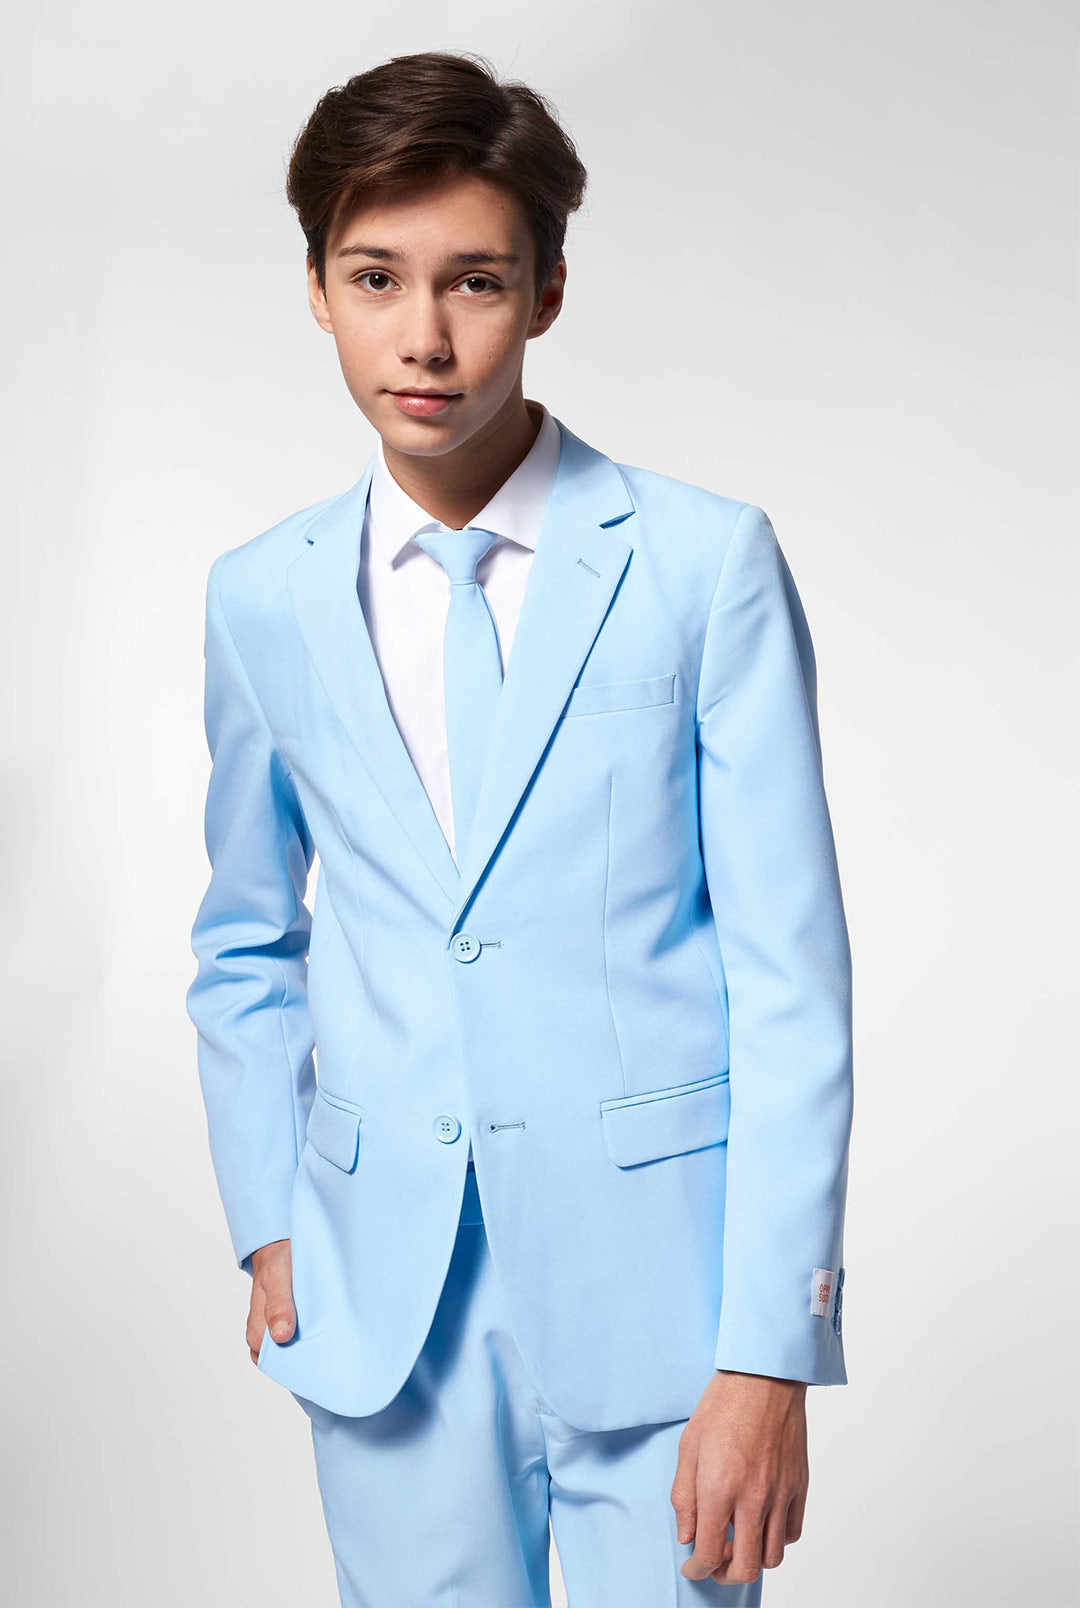 Cool Blue, Light Blue Suit, Pastel suit